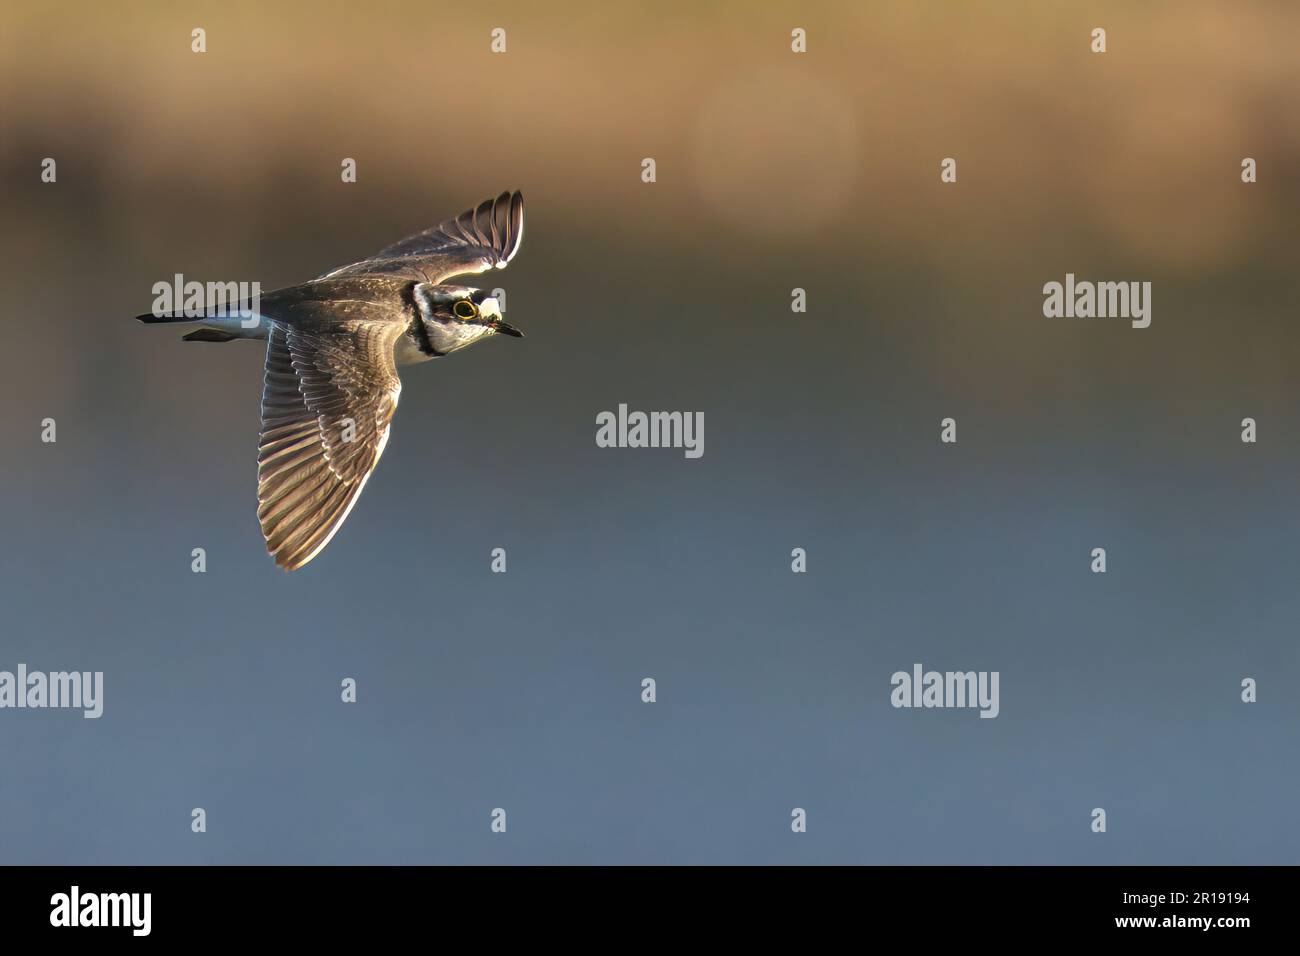 Un piccolo uccello a metà volo, il piccolo pover ad anello, è mostrato in questa immagine Foto Stock